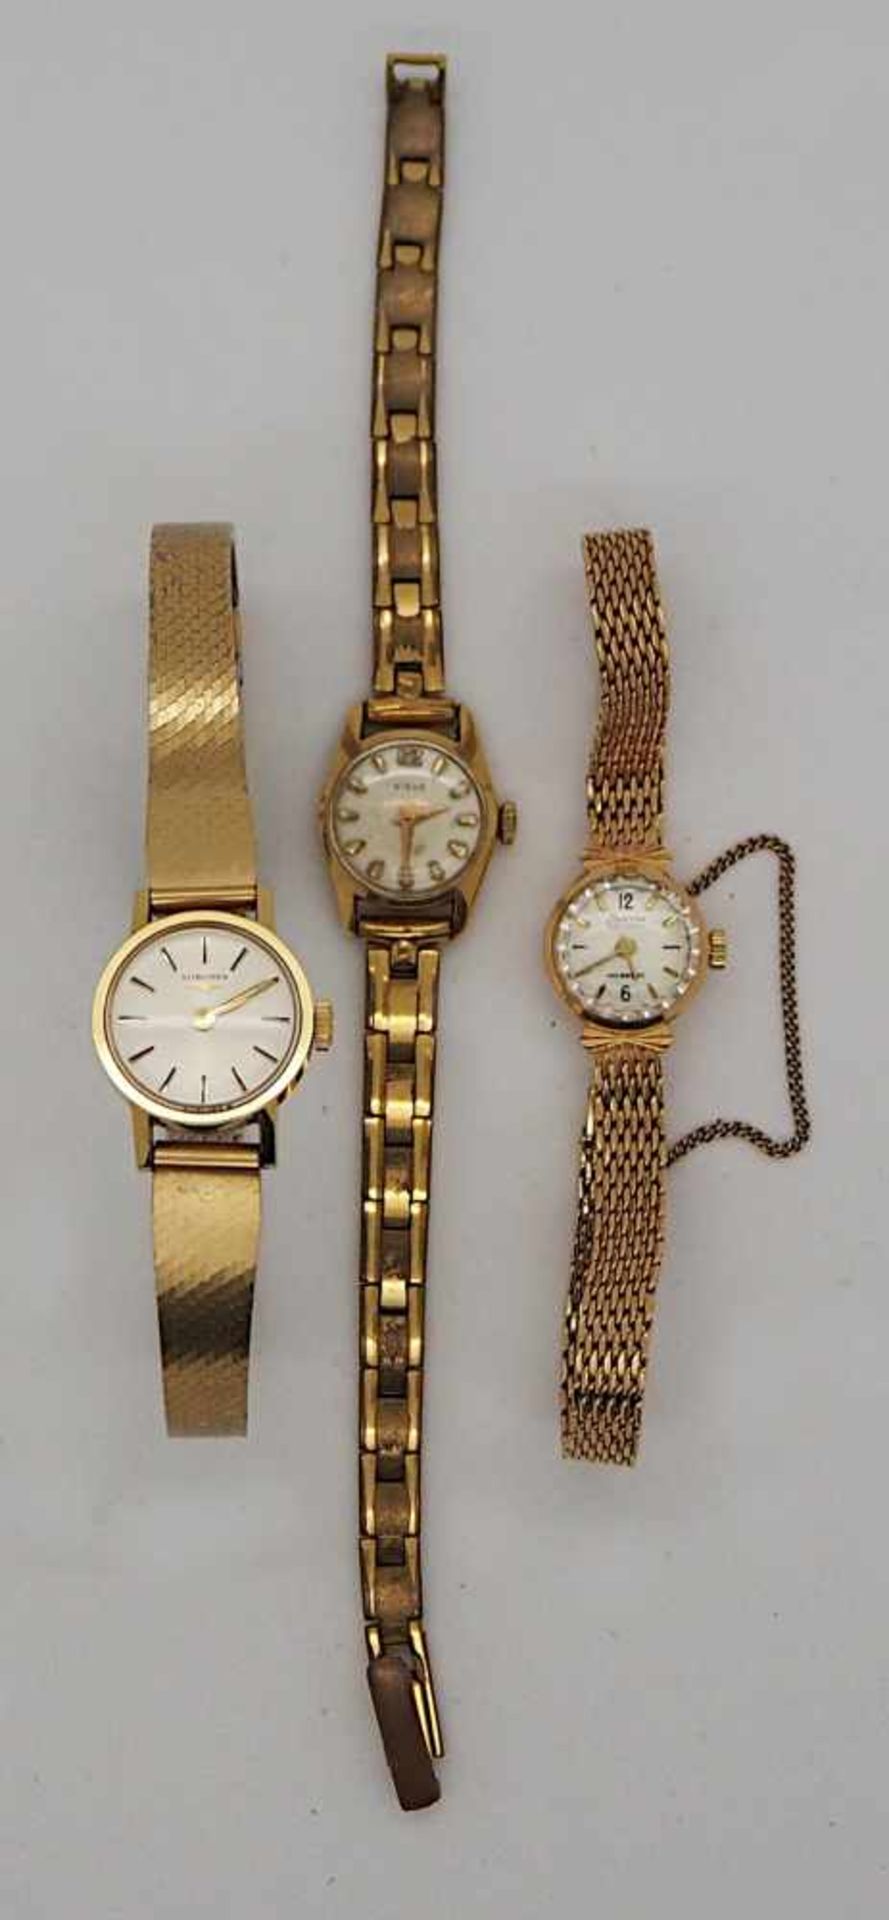 1 Armbanduhr GG 18ct. CONDOR, 2 Uhren, z.T. vergoldet Gsp.